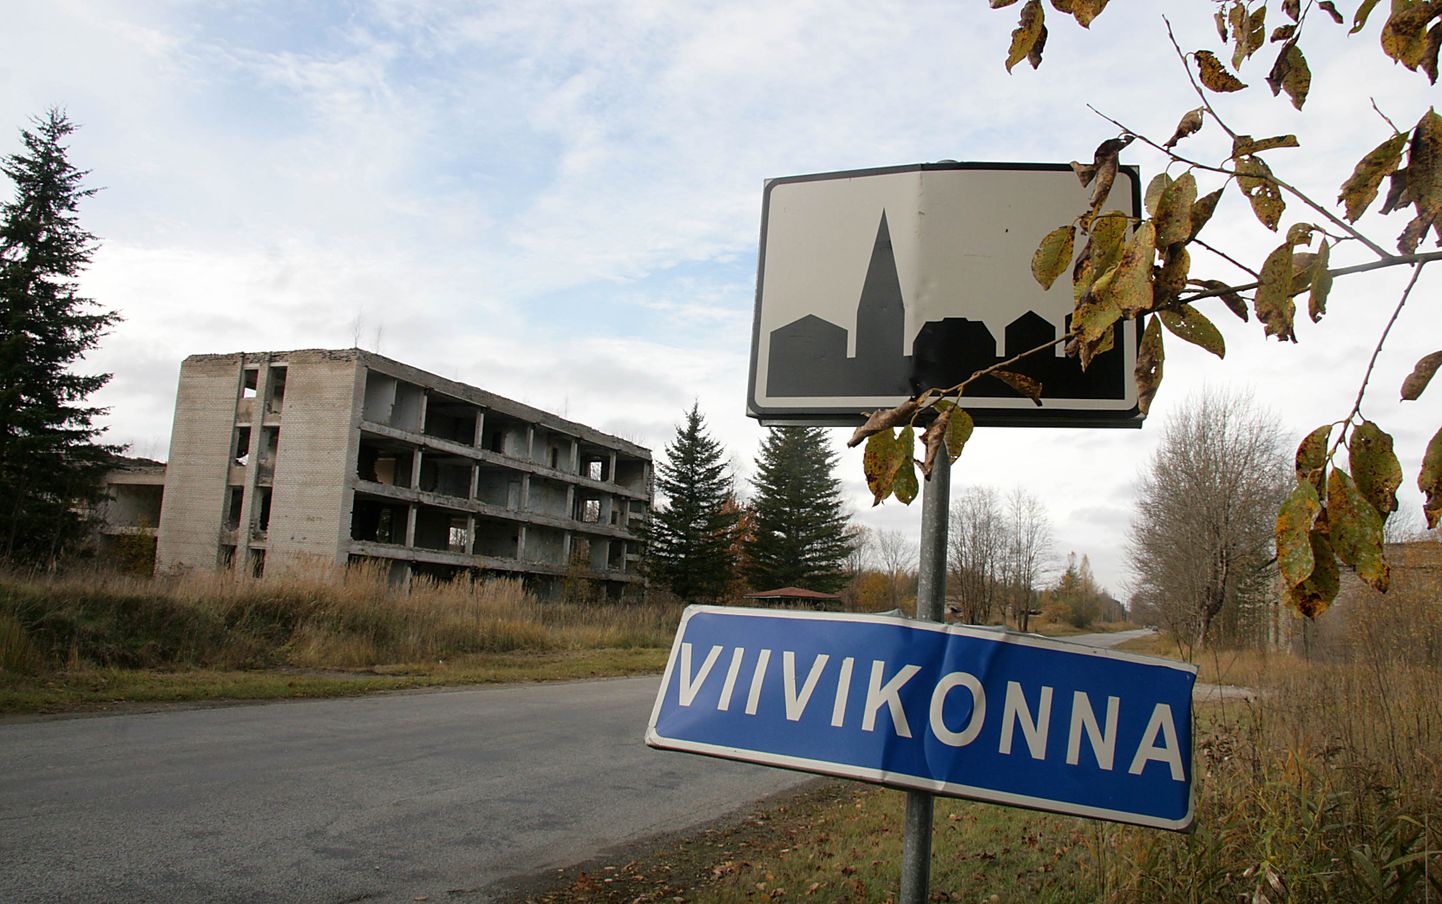 Elanike poolt suures osas hüljatud Viivikonna asula on varsti juba viis aastat olnud tüliõunaks Kohtla-Järve ja Narva-Jõesuu linna vahel ning kohtuskäimistel lõppu veel ei paista.